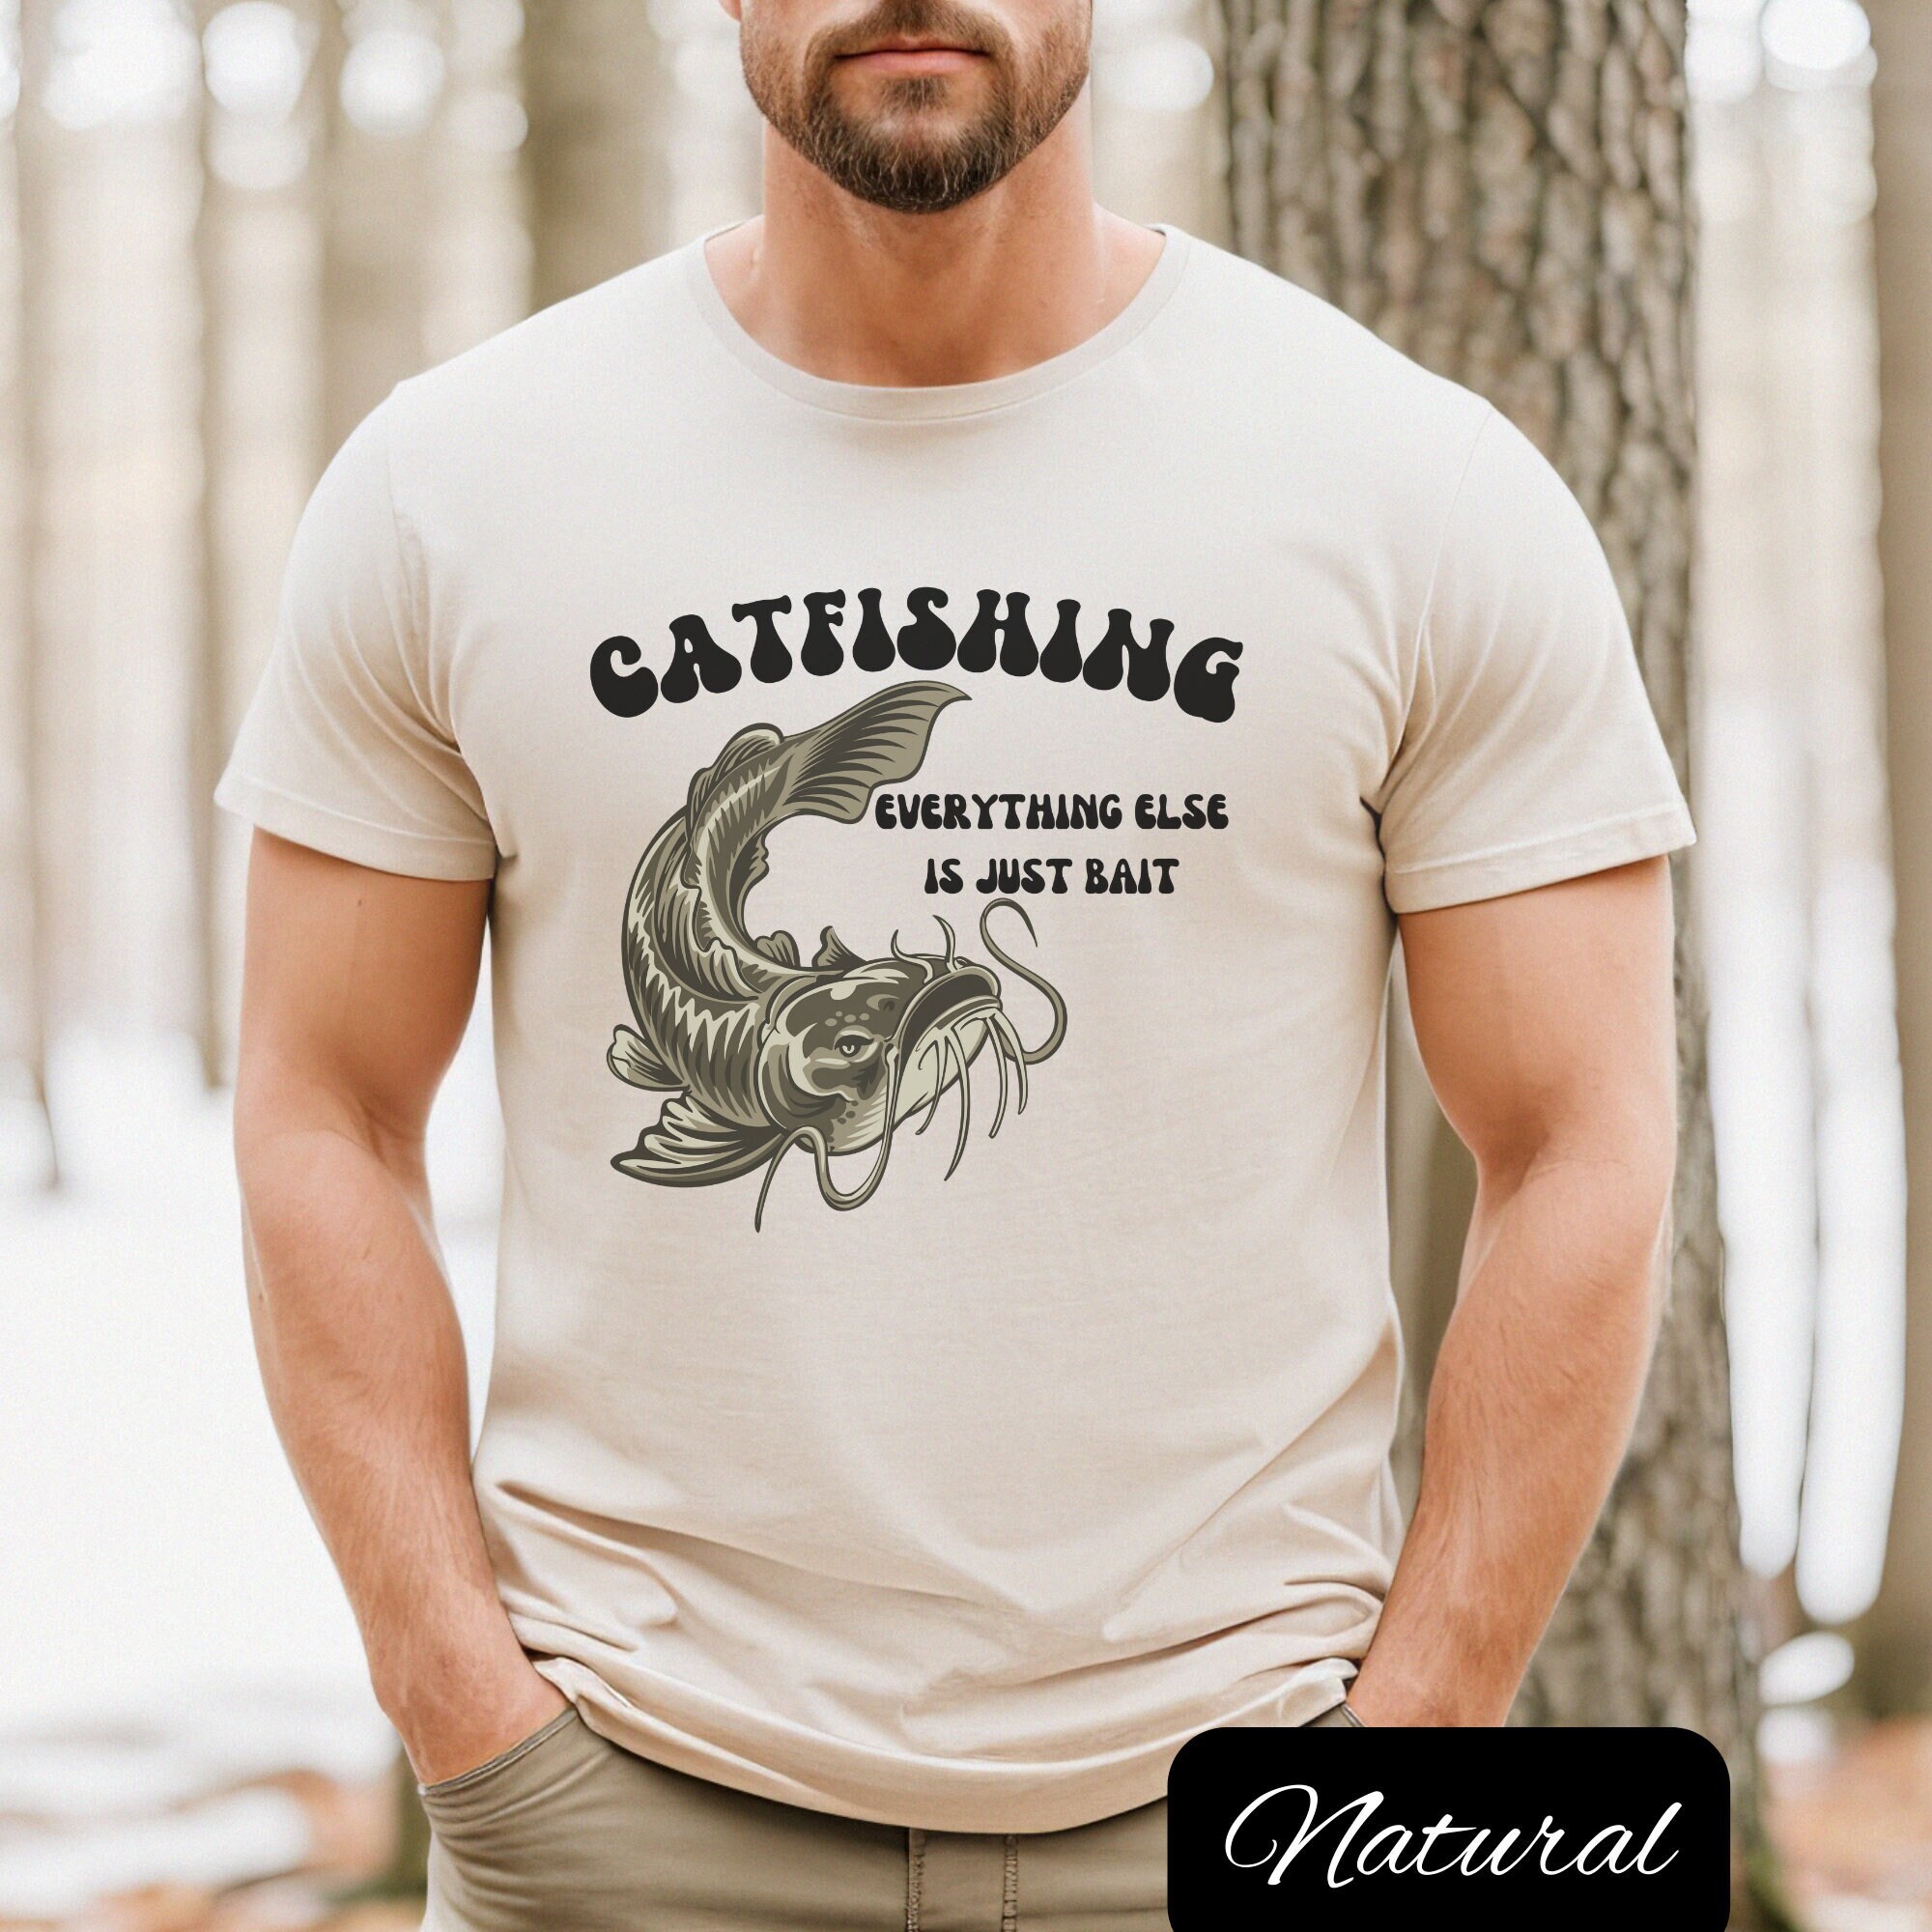 Catfish Murky Water T-shirt Sweatshirt Hoodie BTB2375 